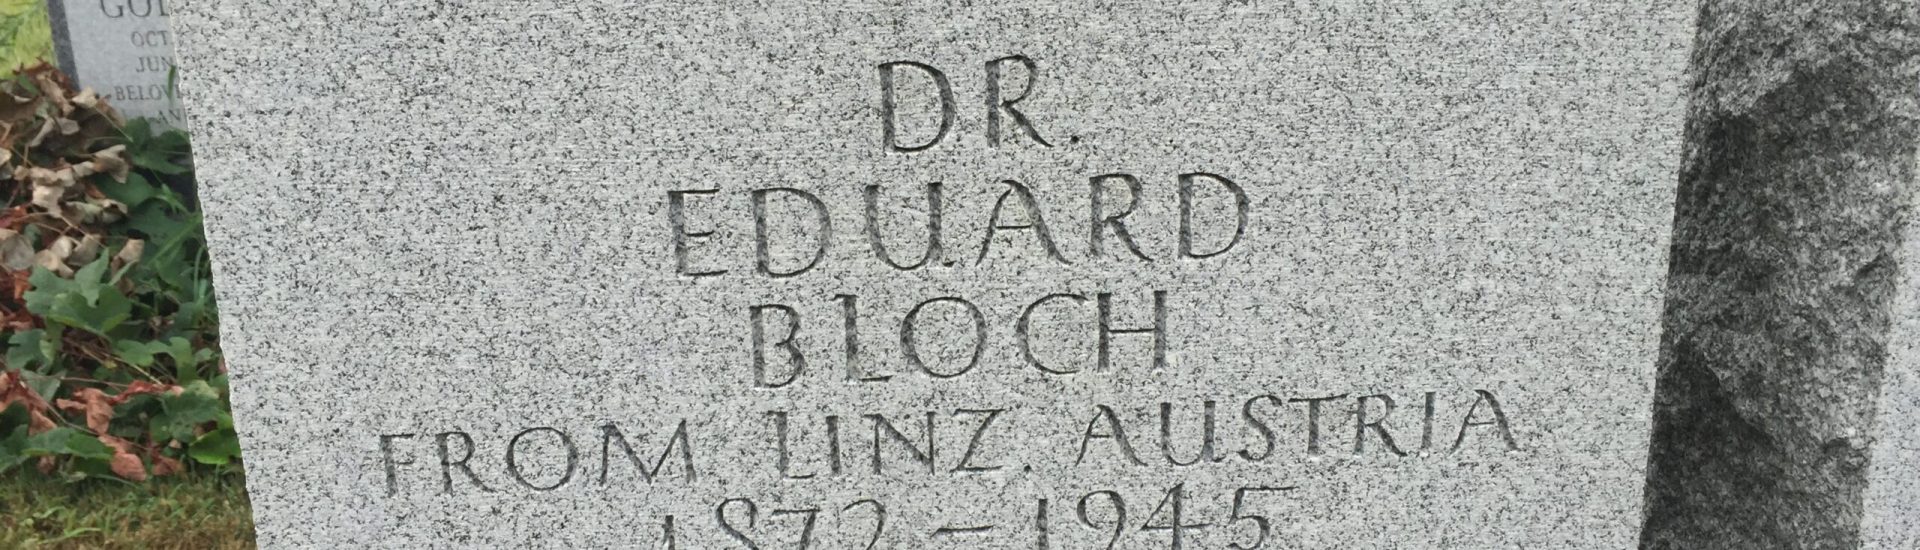 Dr. Eduard Bloch